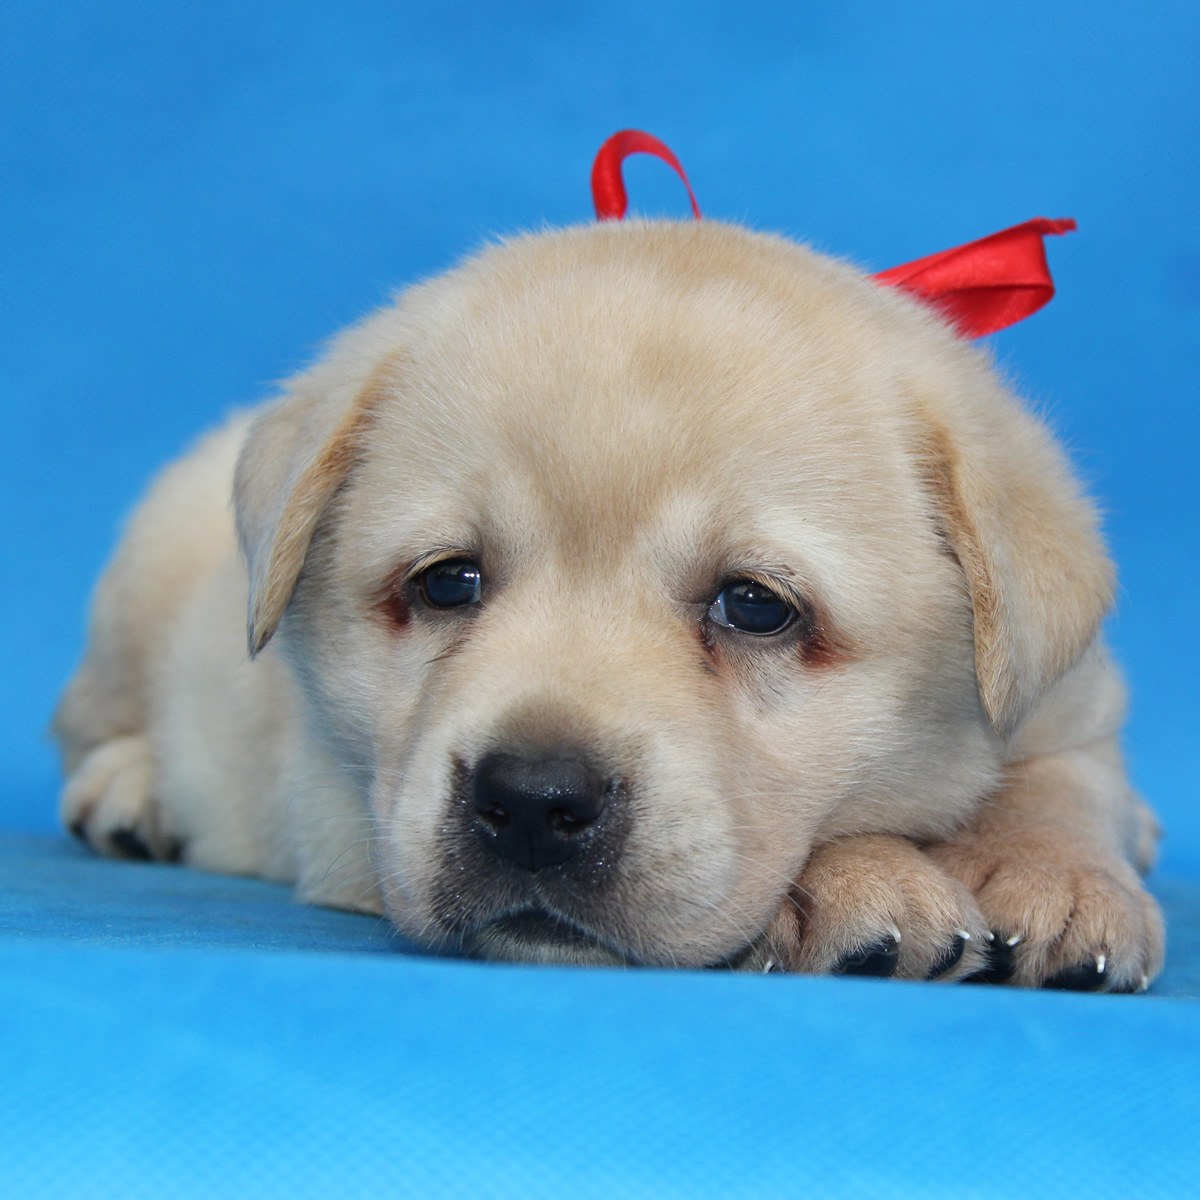 纯种拉布拉多犬幼犬狗狗出售 宠物拉布拉多犬可支付宝交易 拉布拉多犬 /编号10082304 - 宝贝它